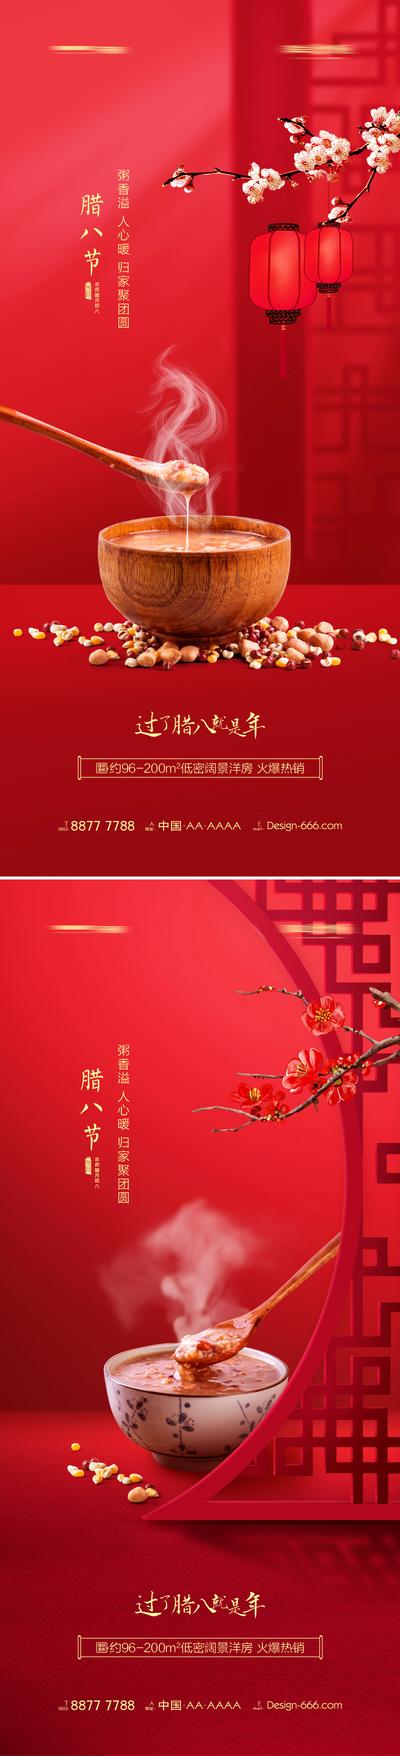 南门网 海报 房地产 中国传统节日 腊八节 腊八粥 梅花 灯笼 中式 